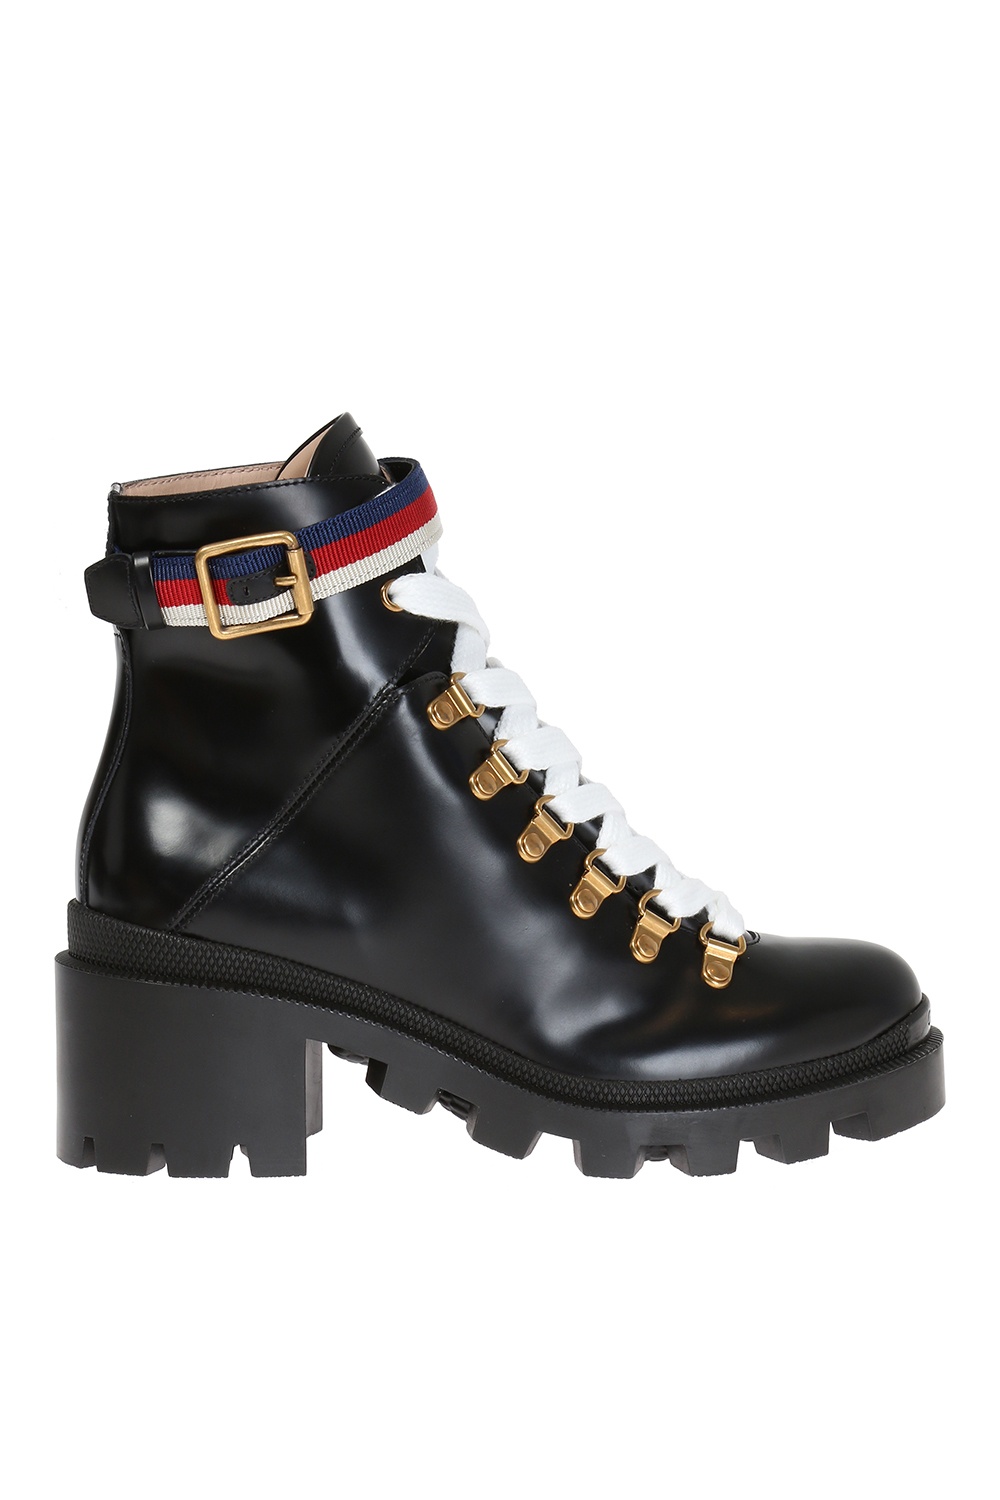 gucci high heel boots